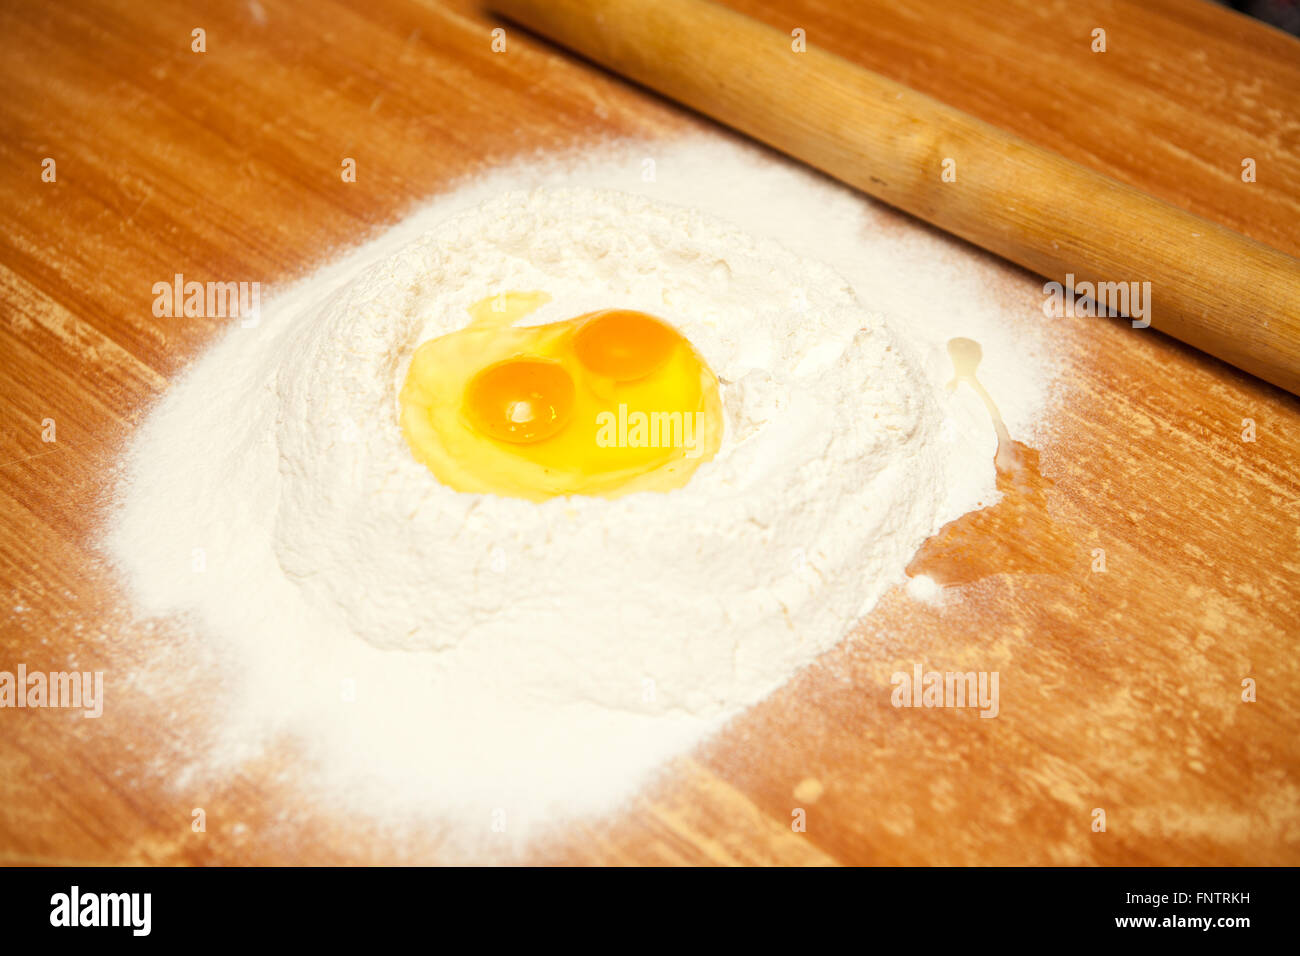 Uova crude nella farina su una tavola di legno Foto Stock